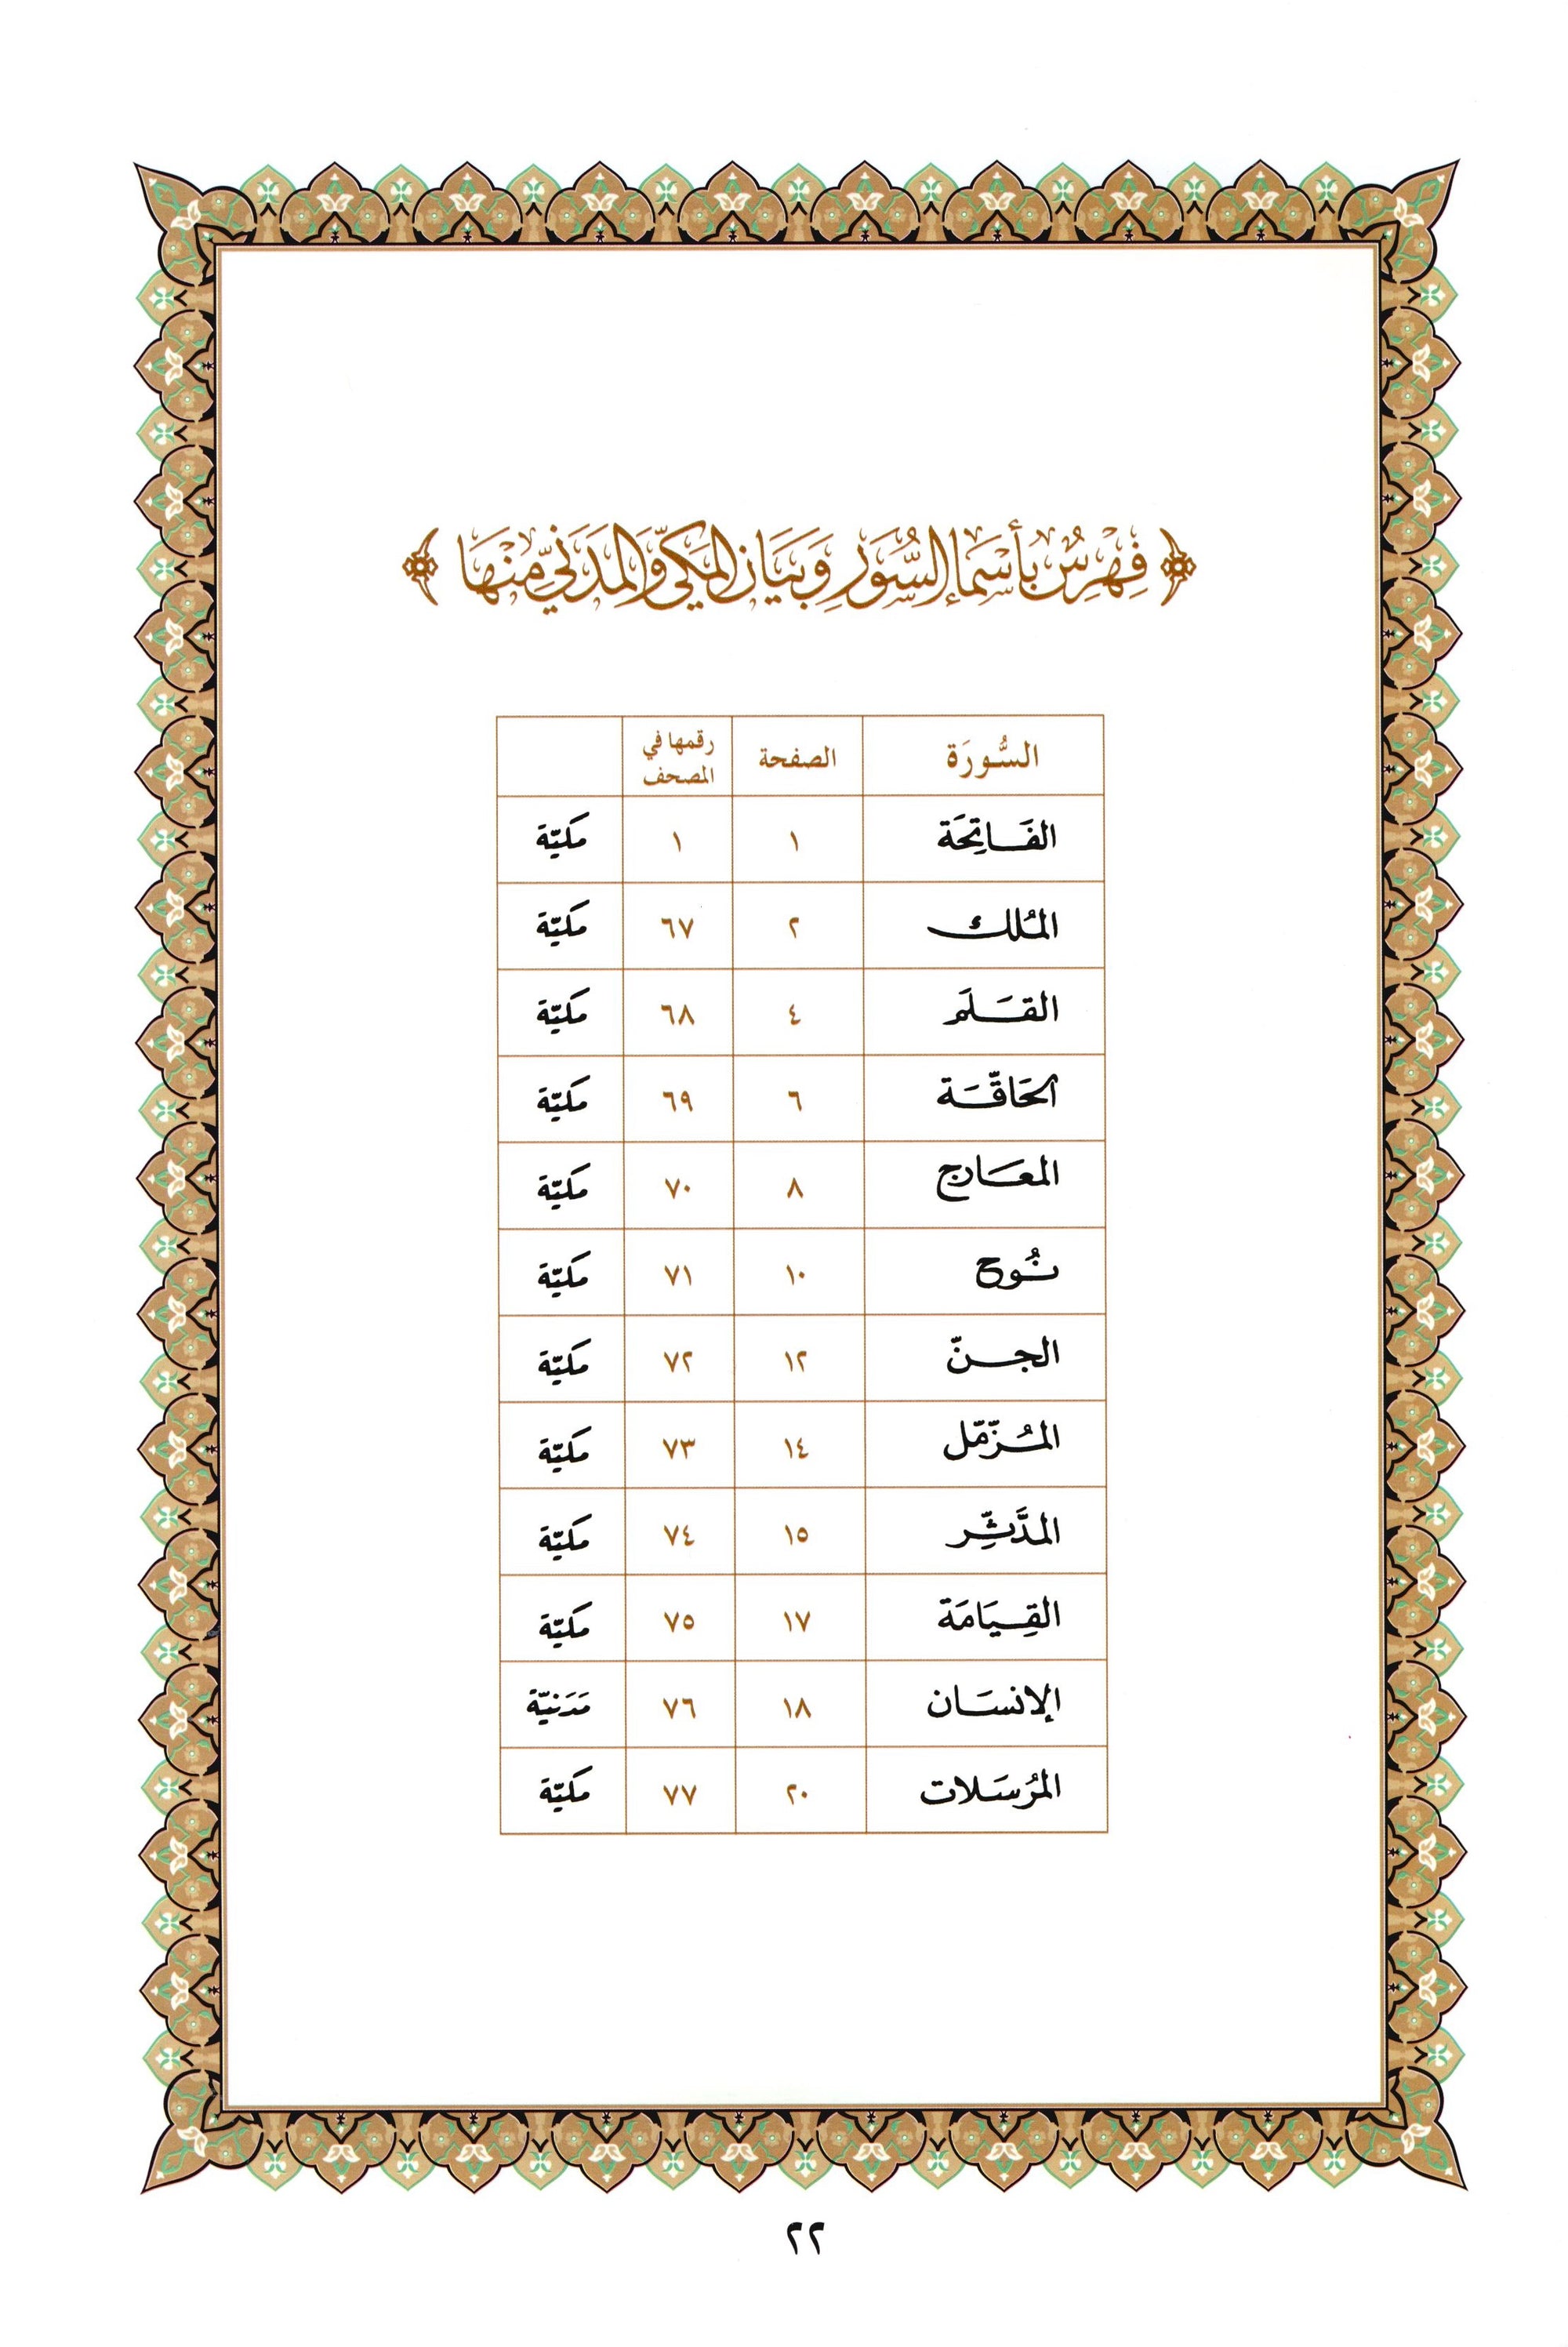 Al-Qaidah An-Noraniah - Juz’ Tabarak & Suratul-Fatihah for Beginners Large 7 x 9 القاعدة النورانية وتطبيقاتها على جزء تبارك مع سورة الفاتحة للمبتدئين